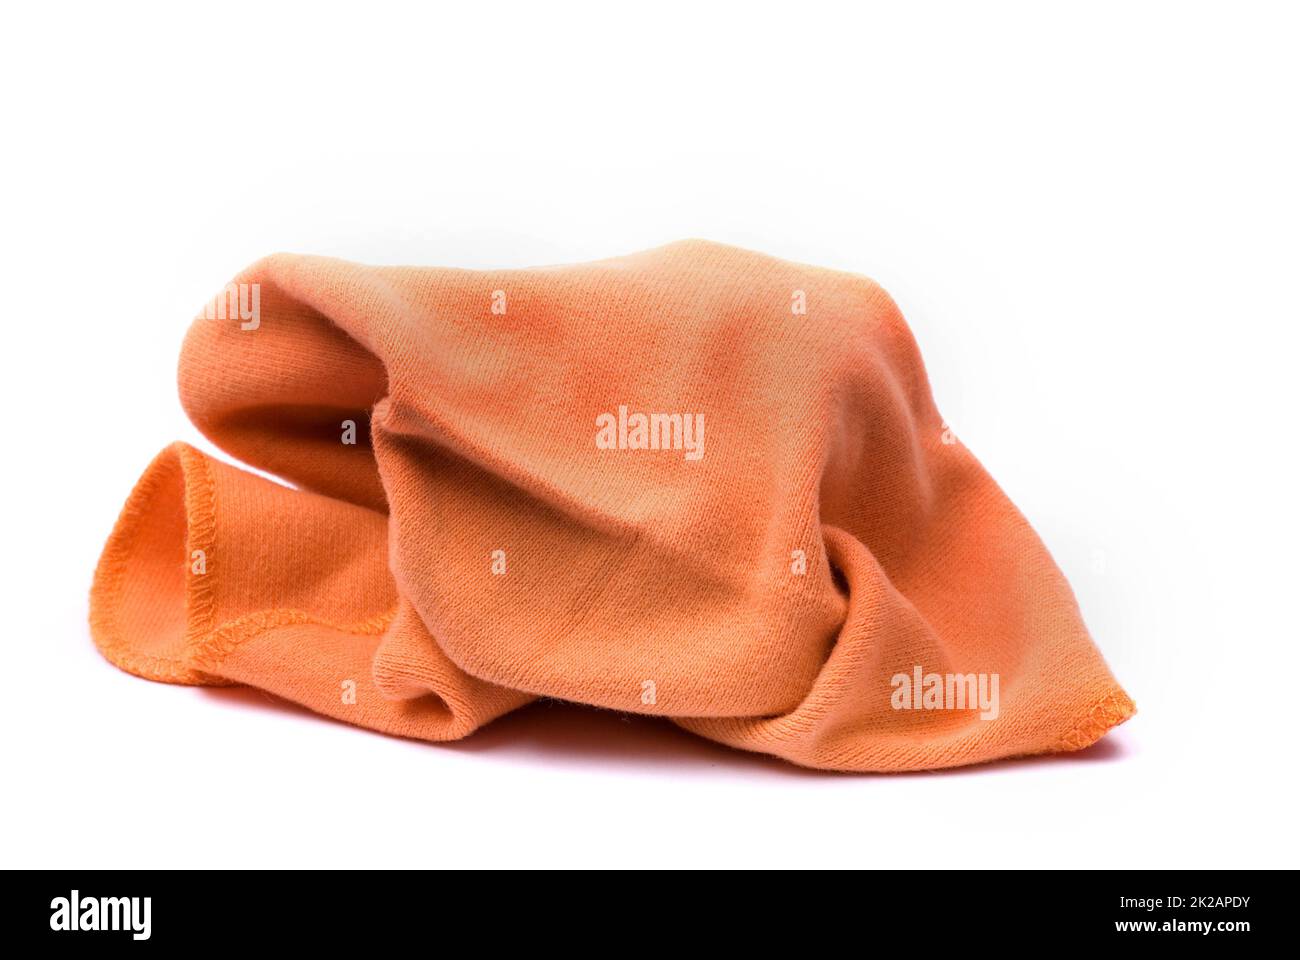 Polvere di arancia come simbolo di pulizia e ordine Foto Stock